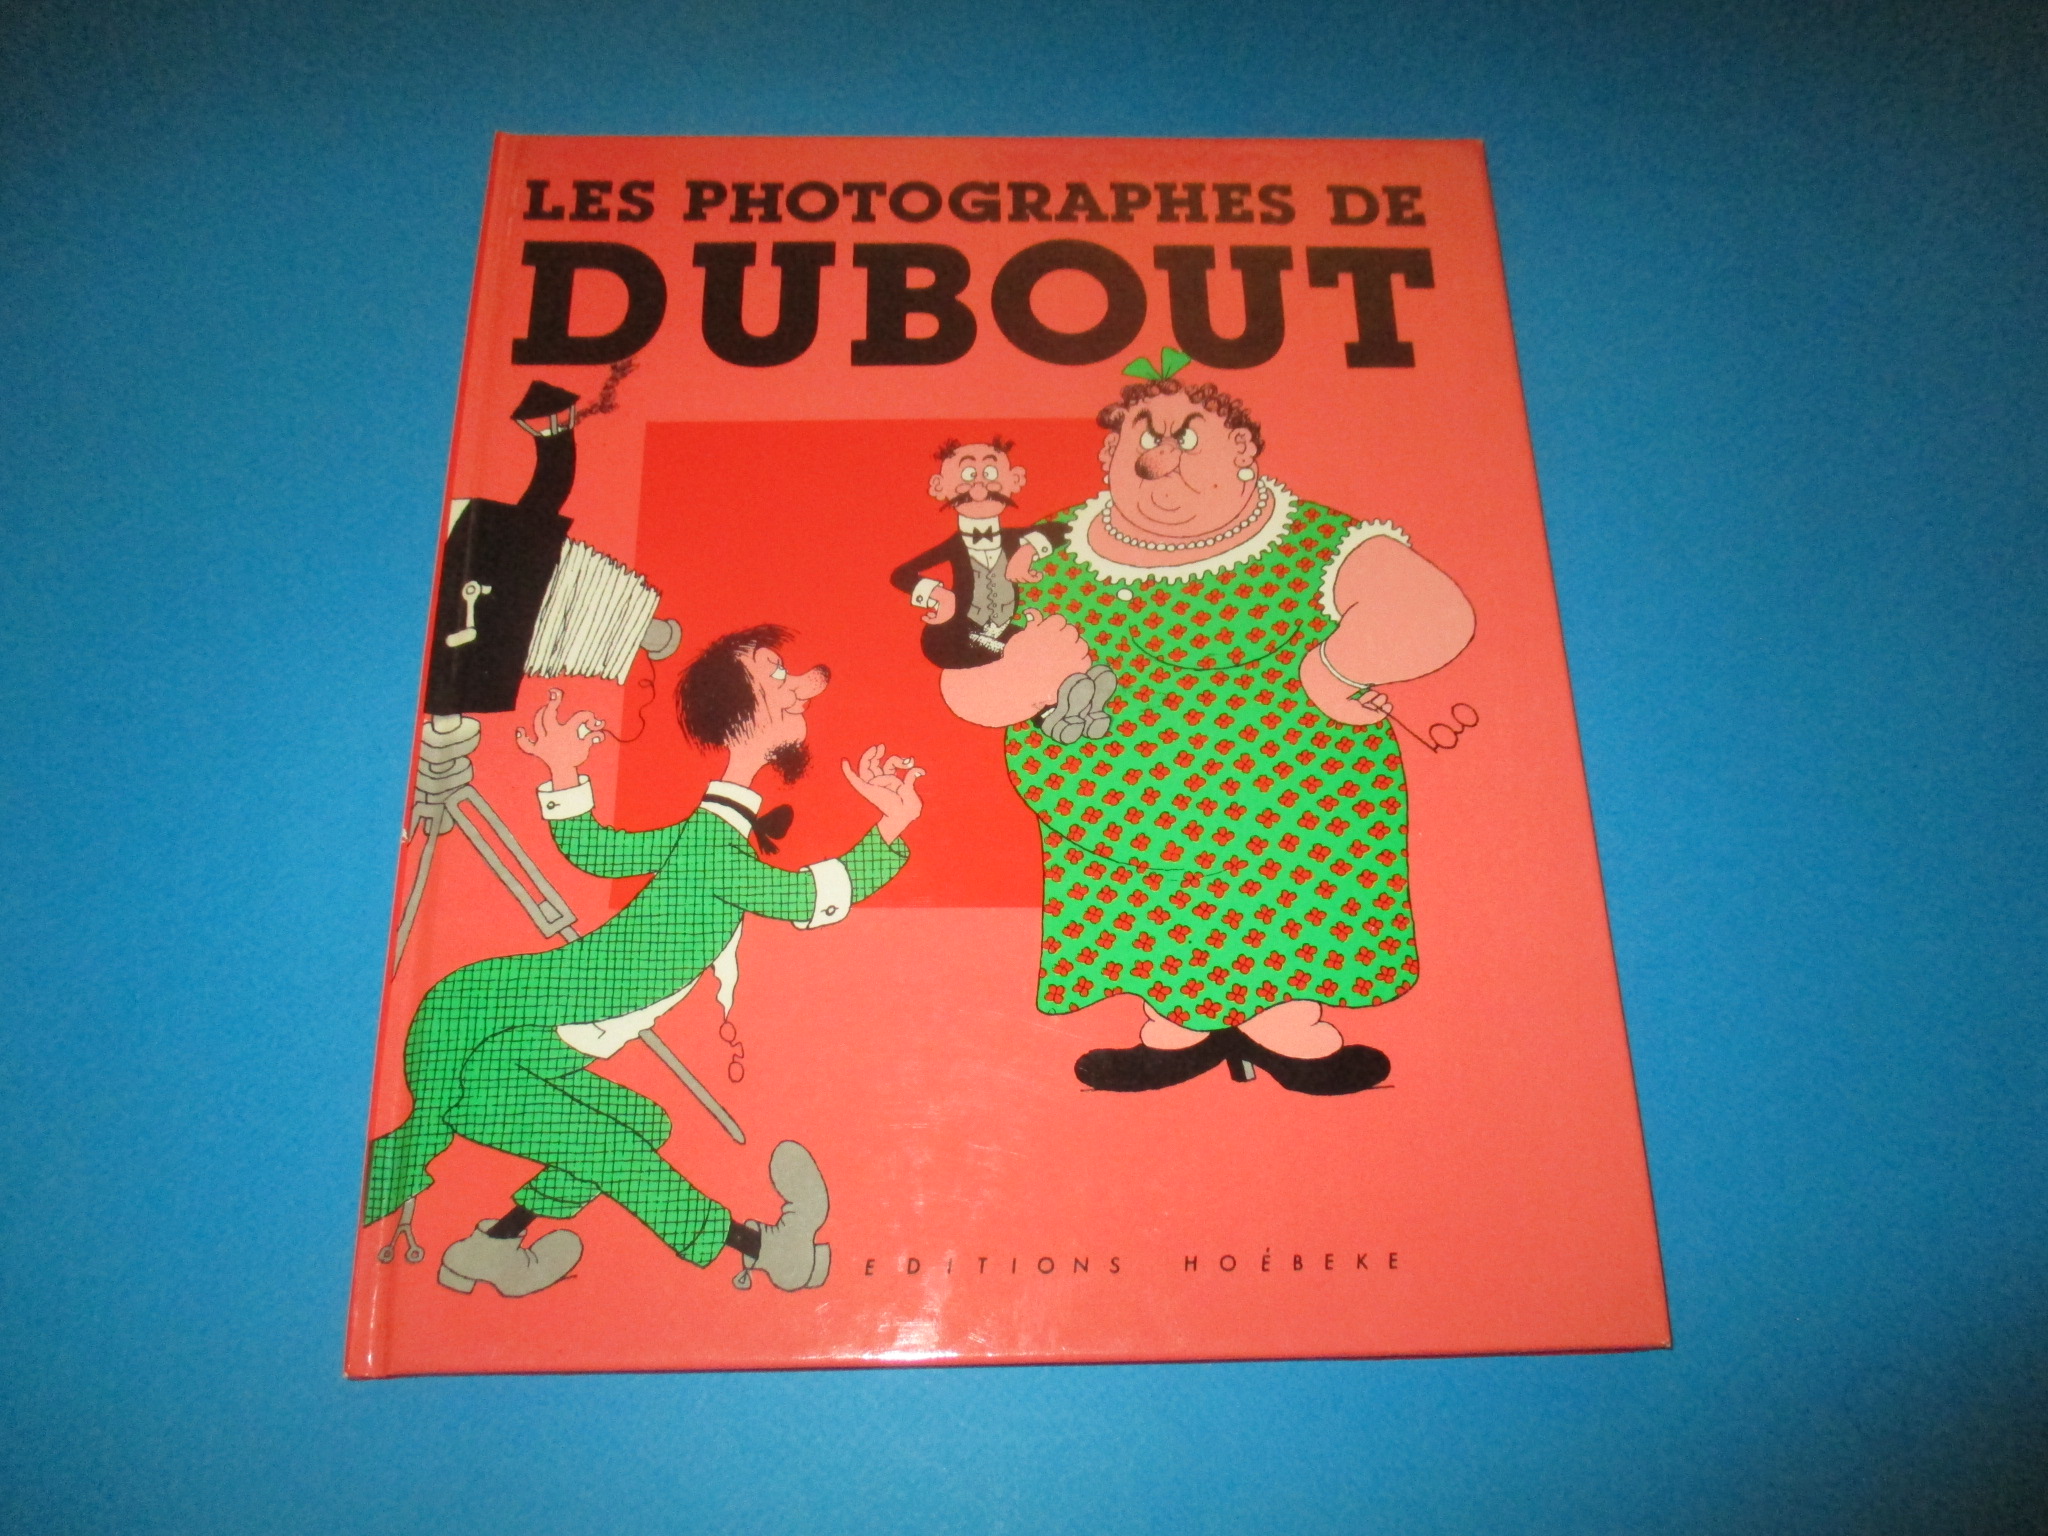 Les Photographes de Dubout, Caricatures Dessins et illustrations, Hoebeke EO 1985